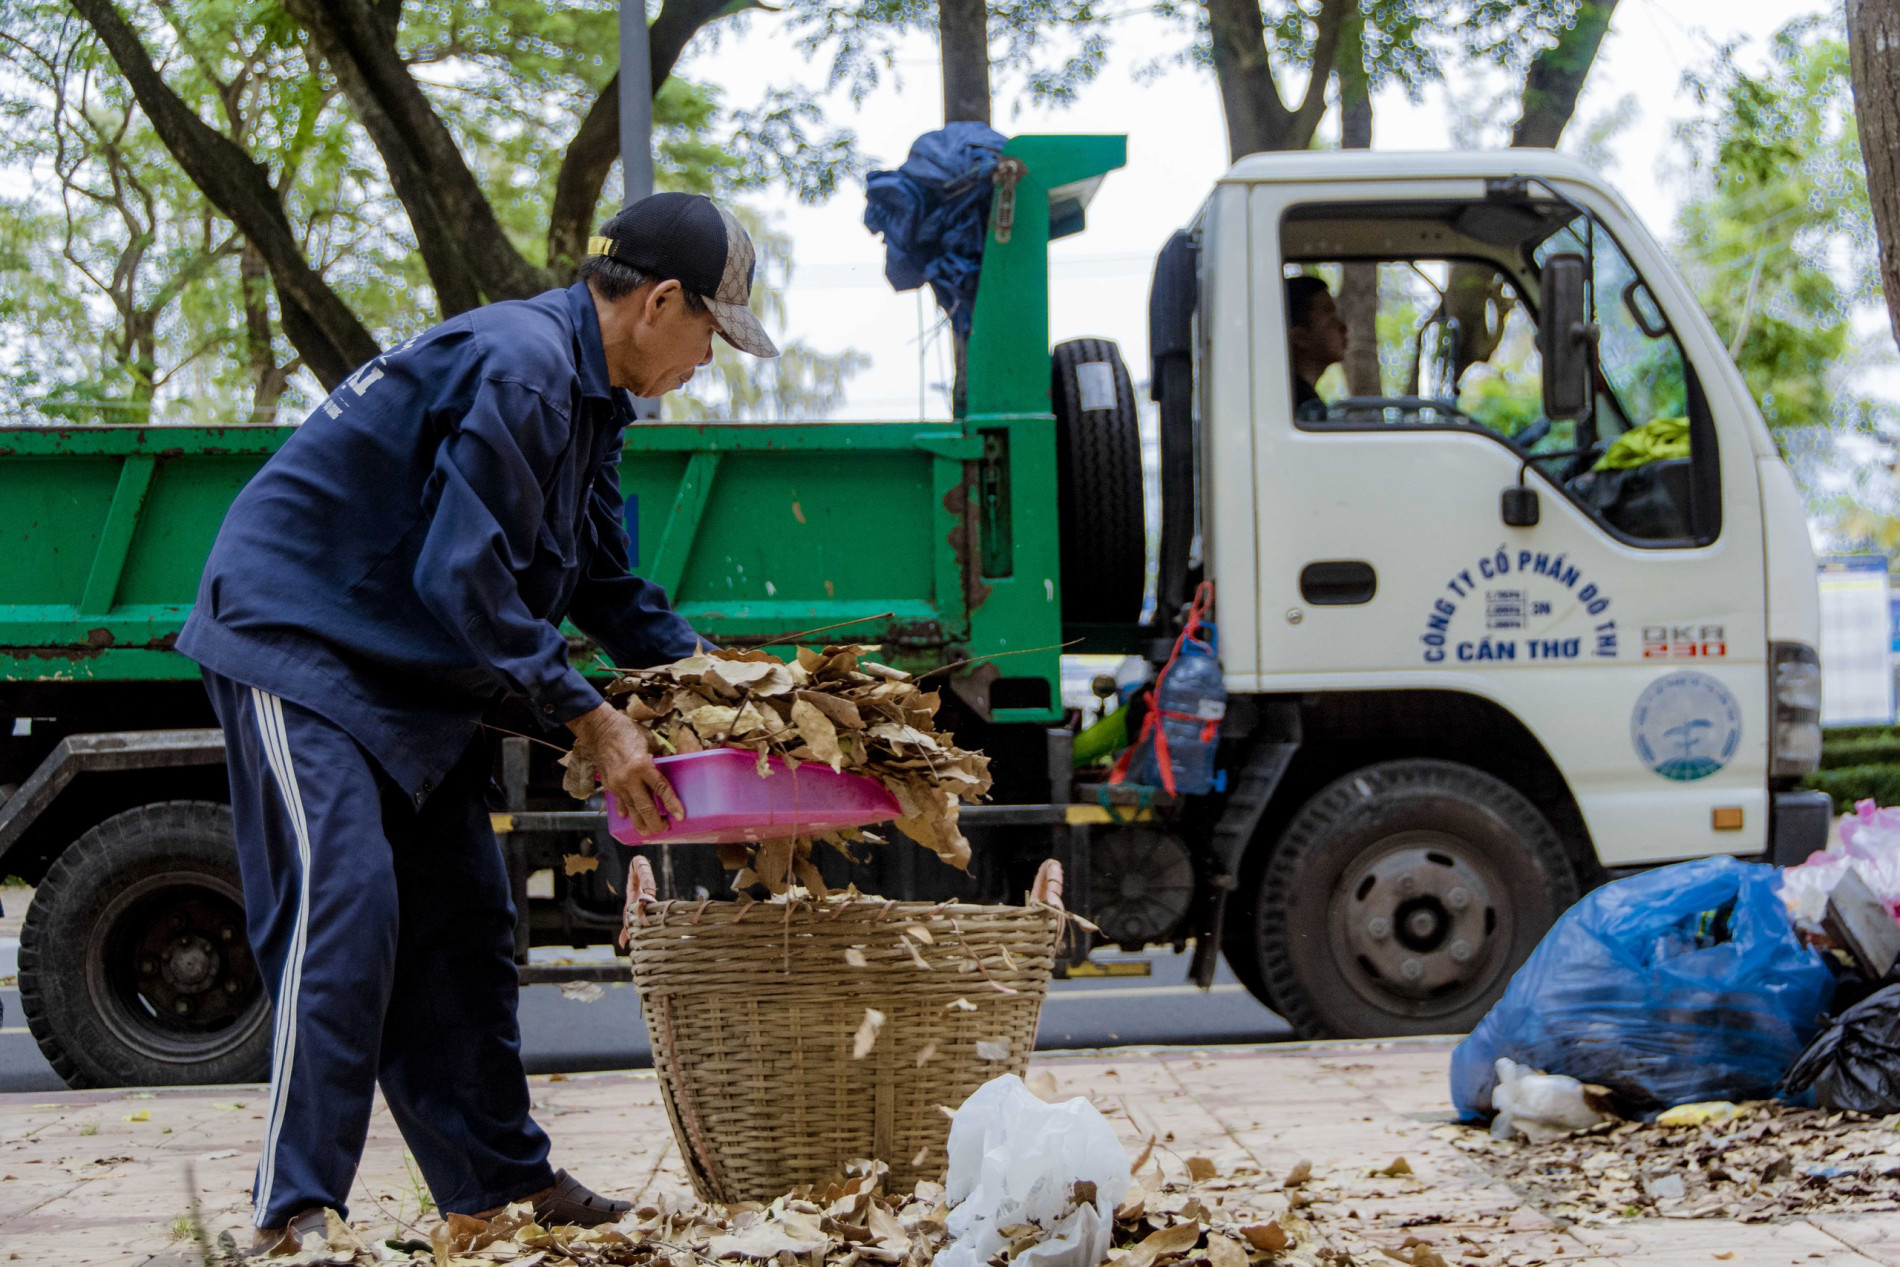 Không kể nắng, mưa, đêm, ngày, những người công nhân quét rác vẫn cặm cụi làm việc, góp phần giúp cho bộ mặt đô thị sạch đẹp. Ảnh: Văn Dương